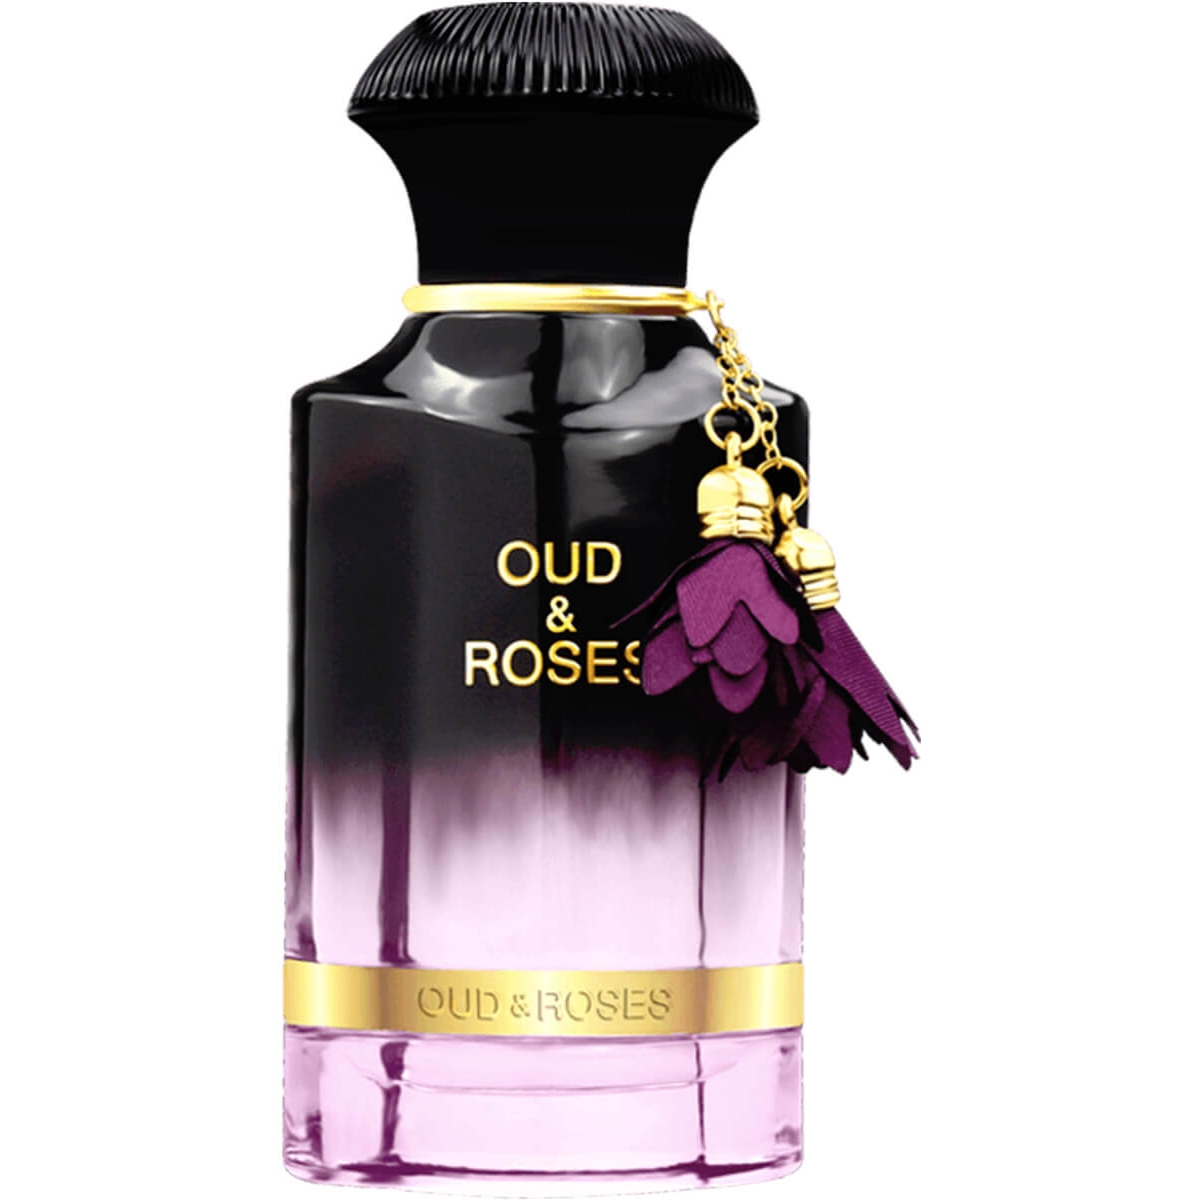 Oud&Roses Ahmed al Maghribi Perfumes Perfumes, Perfumes For Women, Arada Perfumes